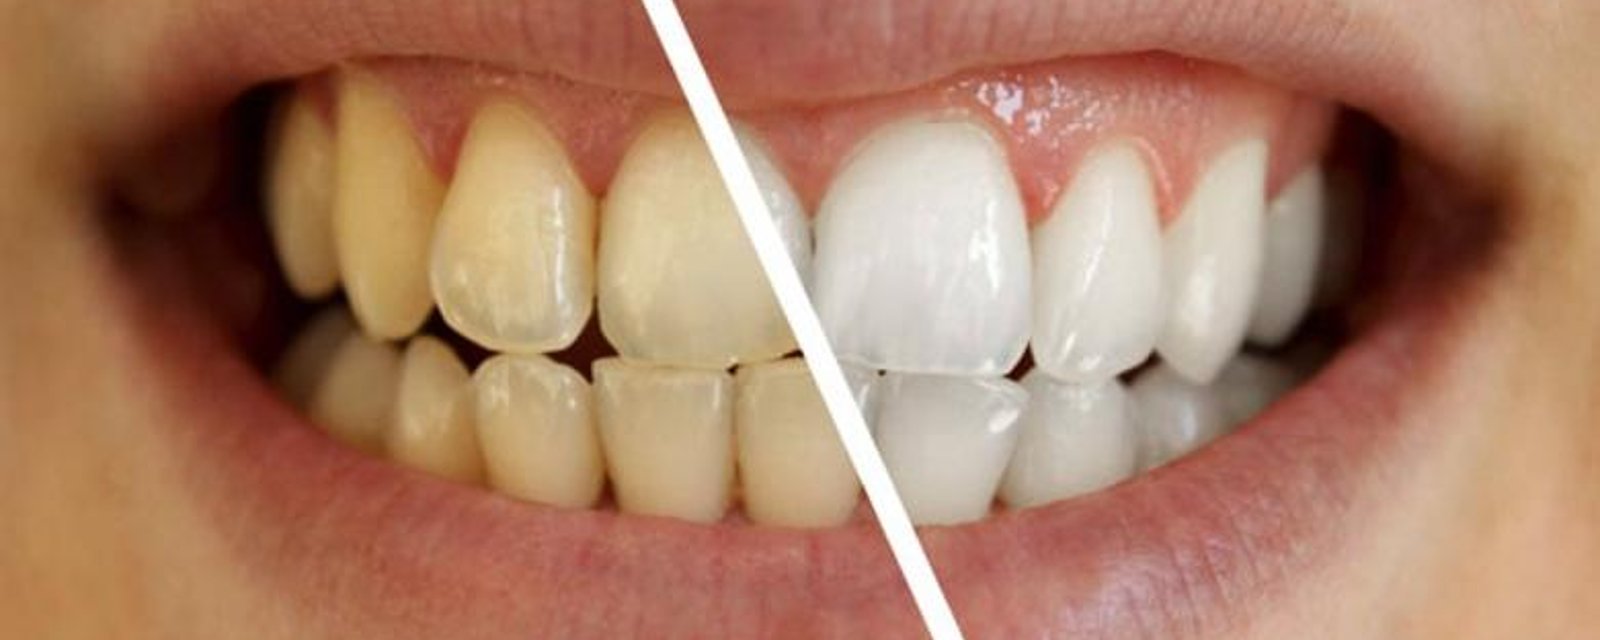 Comment blanchir vos dents naturellement ! Ce qui est conseillé et ce qui est à éviter!